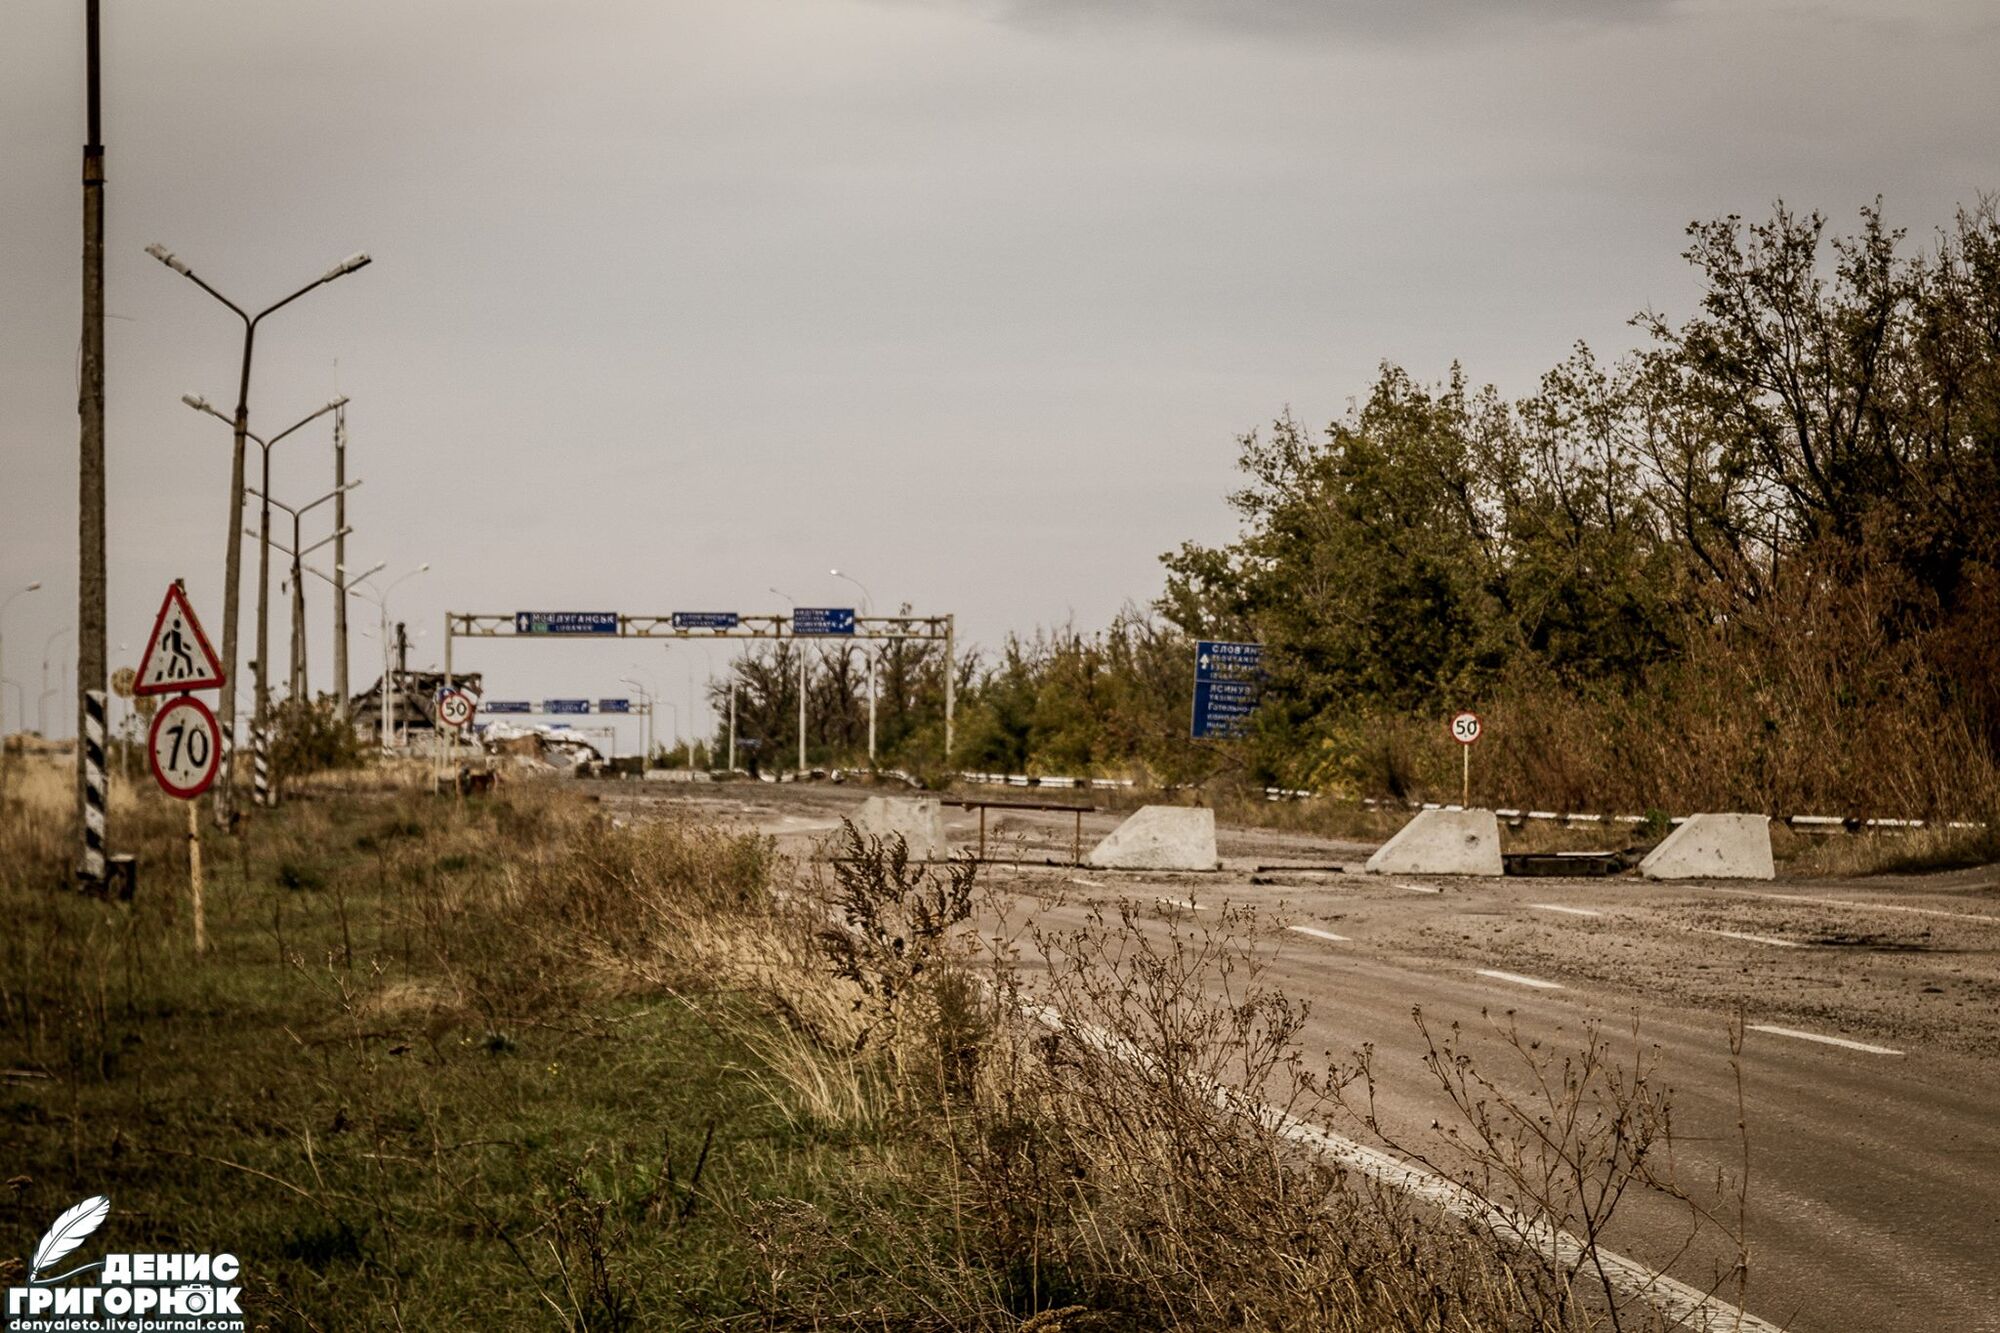 Донецк в руинах: в сети показали свежие постапокалиптические фото